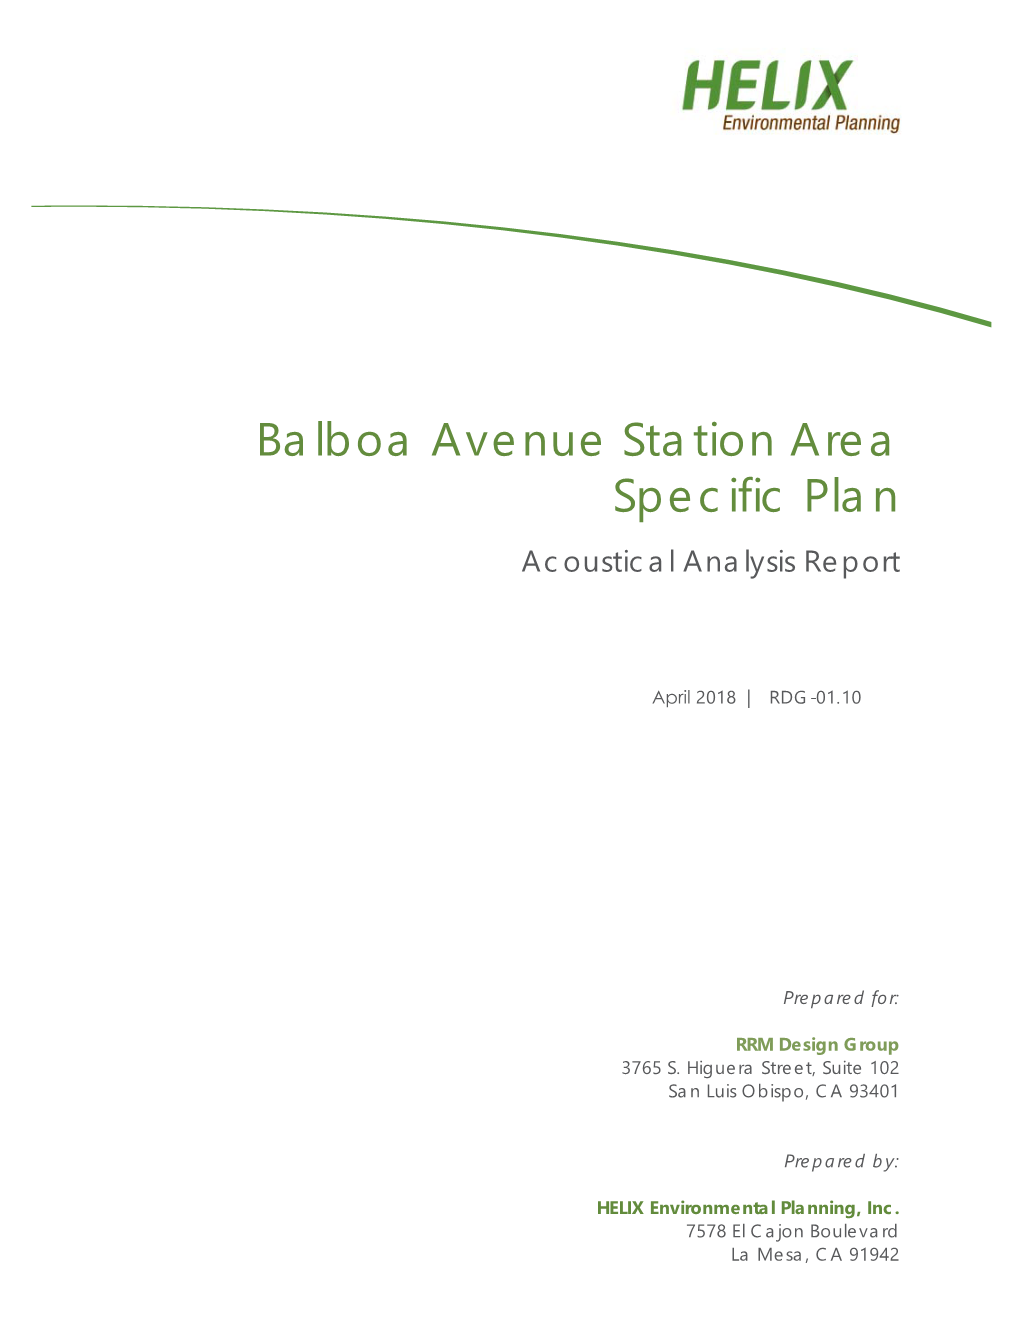 Balboa Avenue Station Area Specific Plan